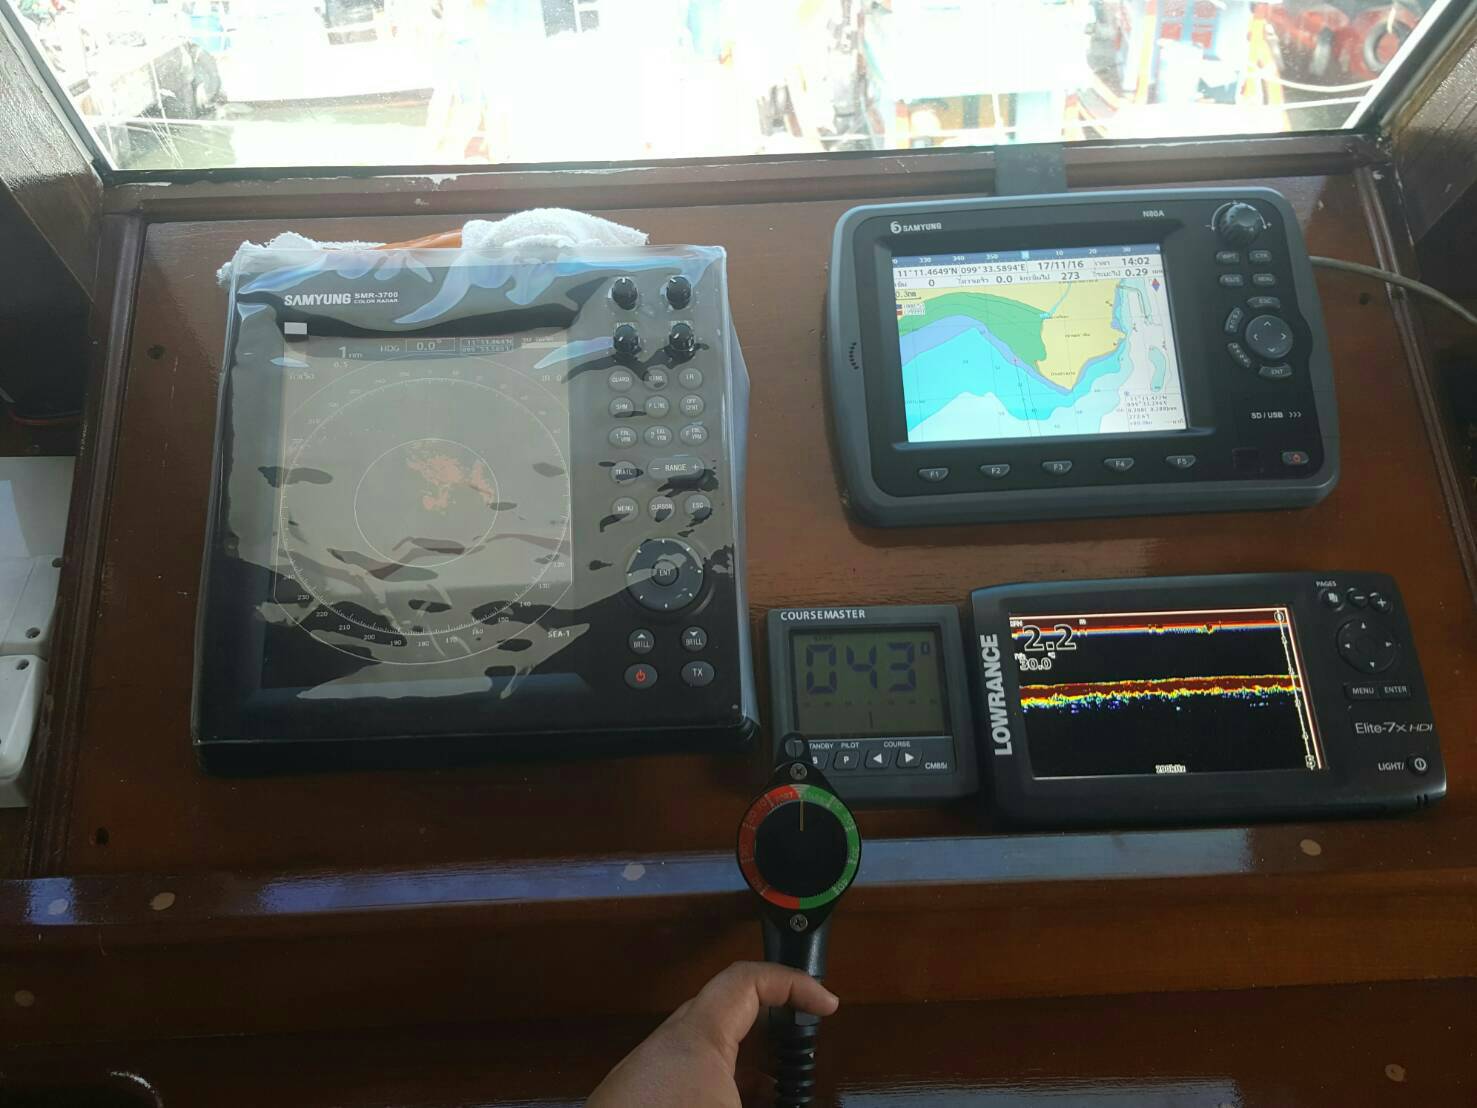 อุปกรณ์เดินเรือ...เดินเรือด้วยระบบ Auto pilot และ Radar... จัดเต็มจริงๆครับ